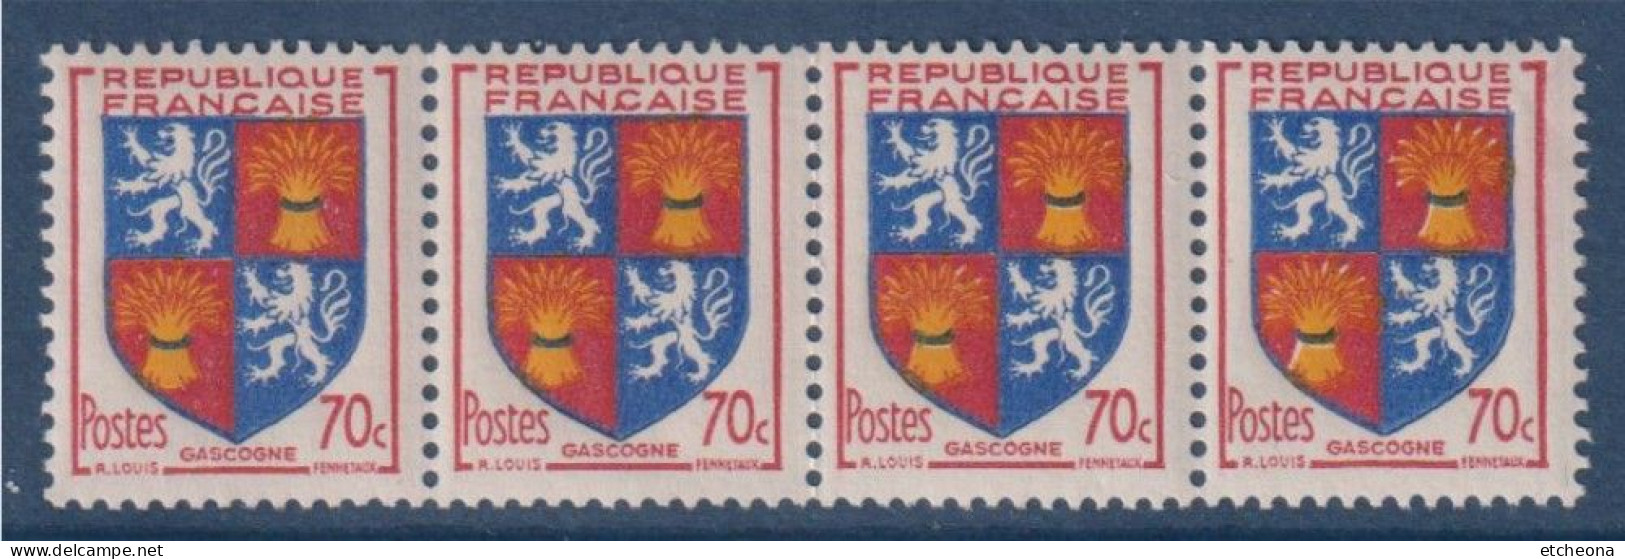 Gascogne Armoiries De Provinces VI N°958 Bande De 4 Timbres Neufs - 1941-66 Escudos Y Blasones